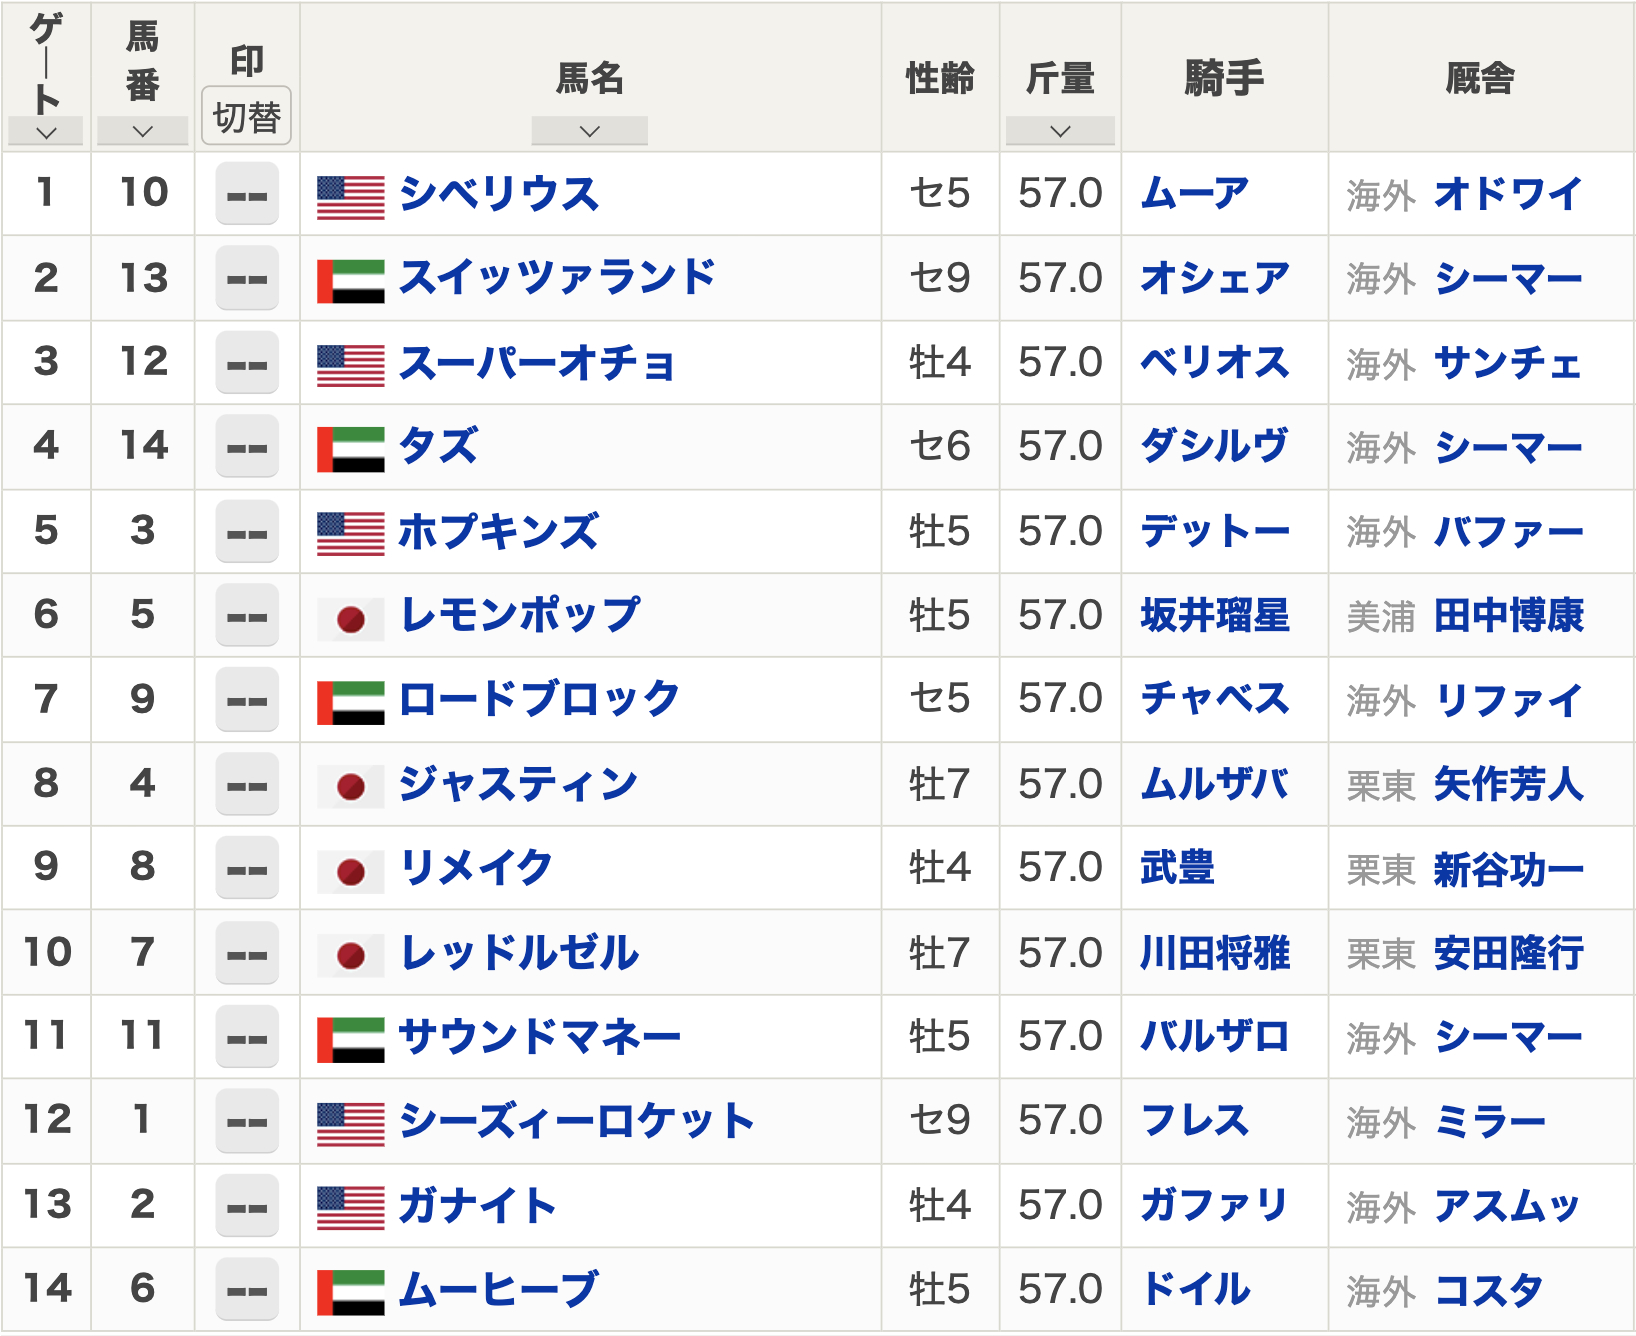 【ドバイゴールデンシャヒーン2023枠順】日本からレモンポップ、レッドルゼル、リメイク、ジャスティンが出走